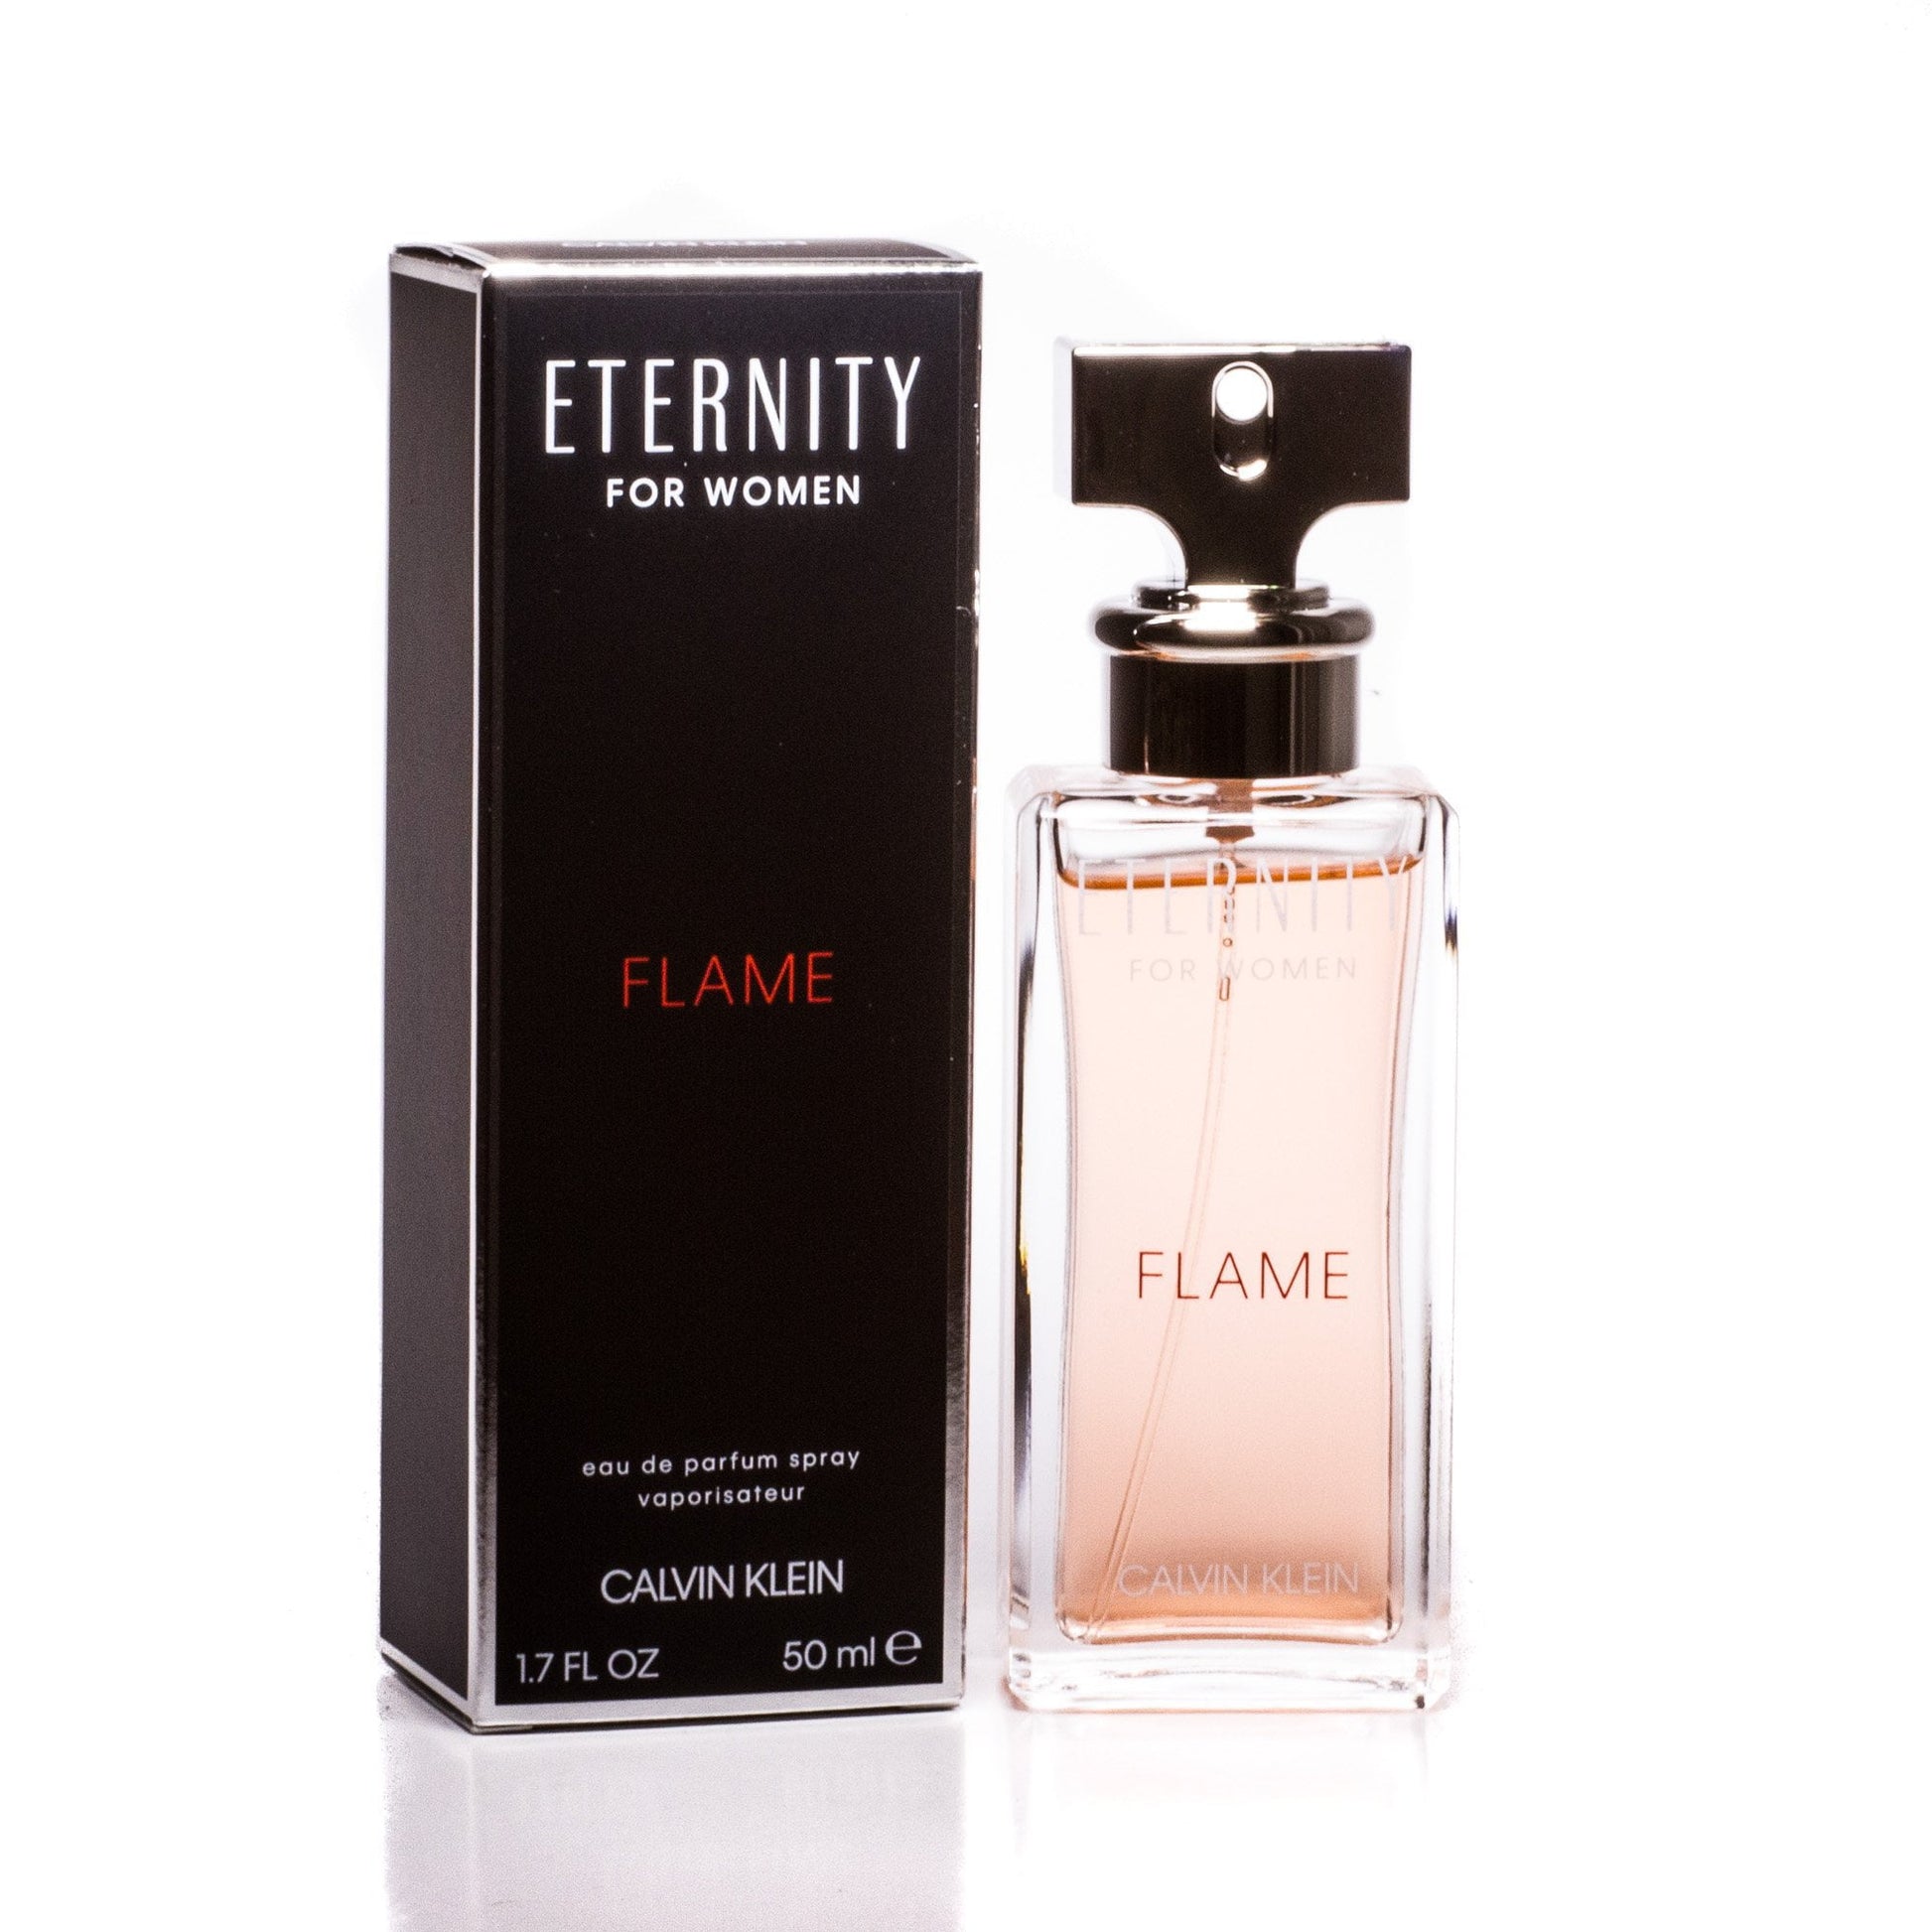 Eternity Flame Eau de Parfum Spray for Women by Calvin Klein, Product image 2